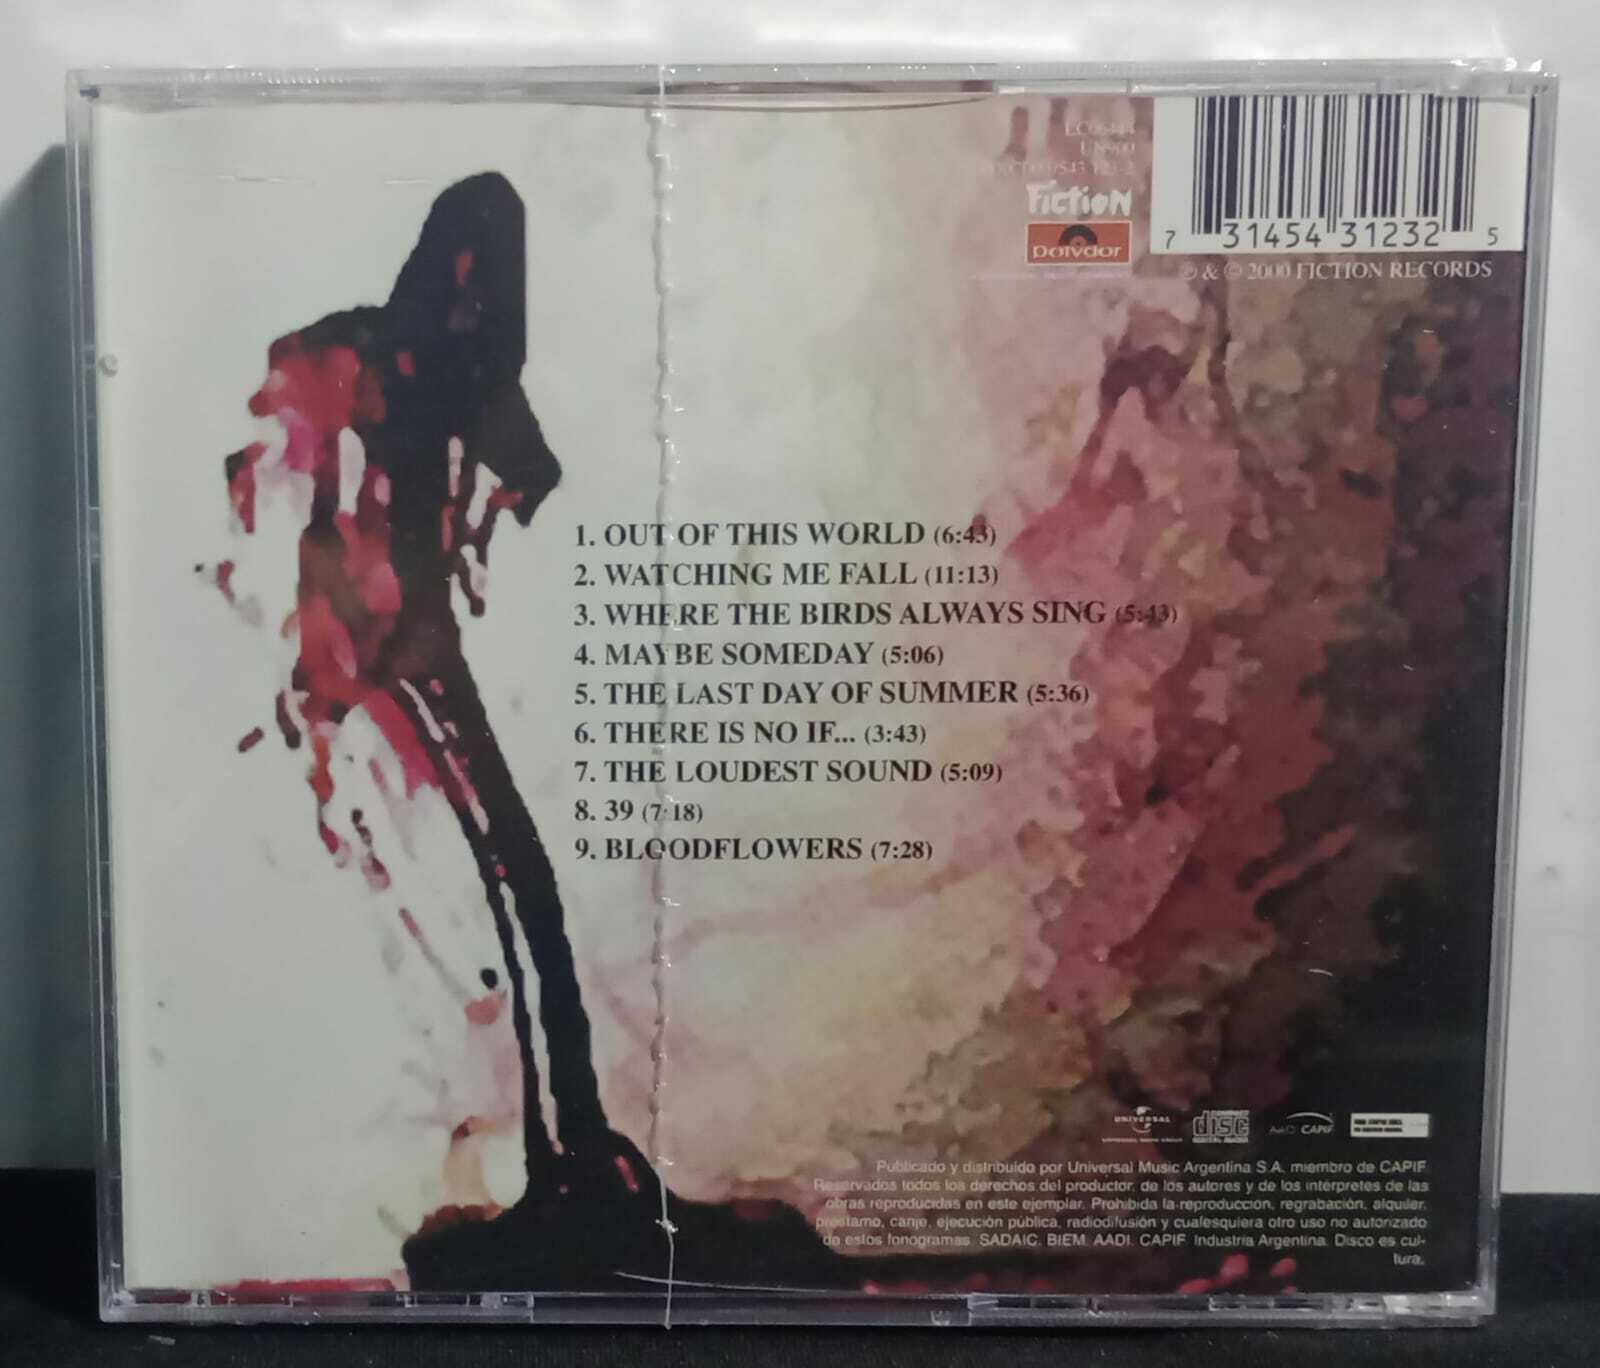 CD - Cure The - Bloodflowers (Imp/Lacrado)